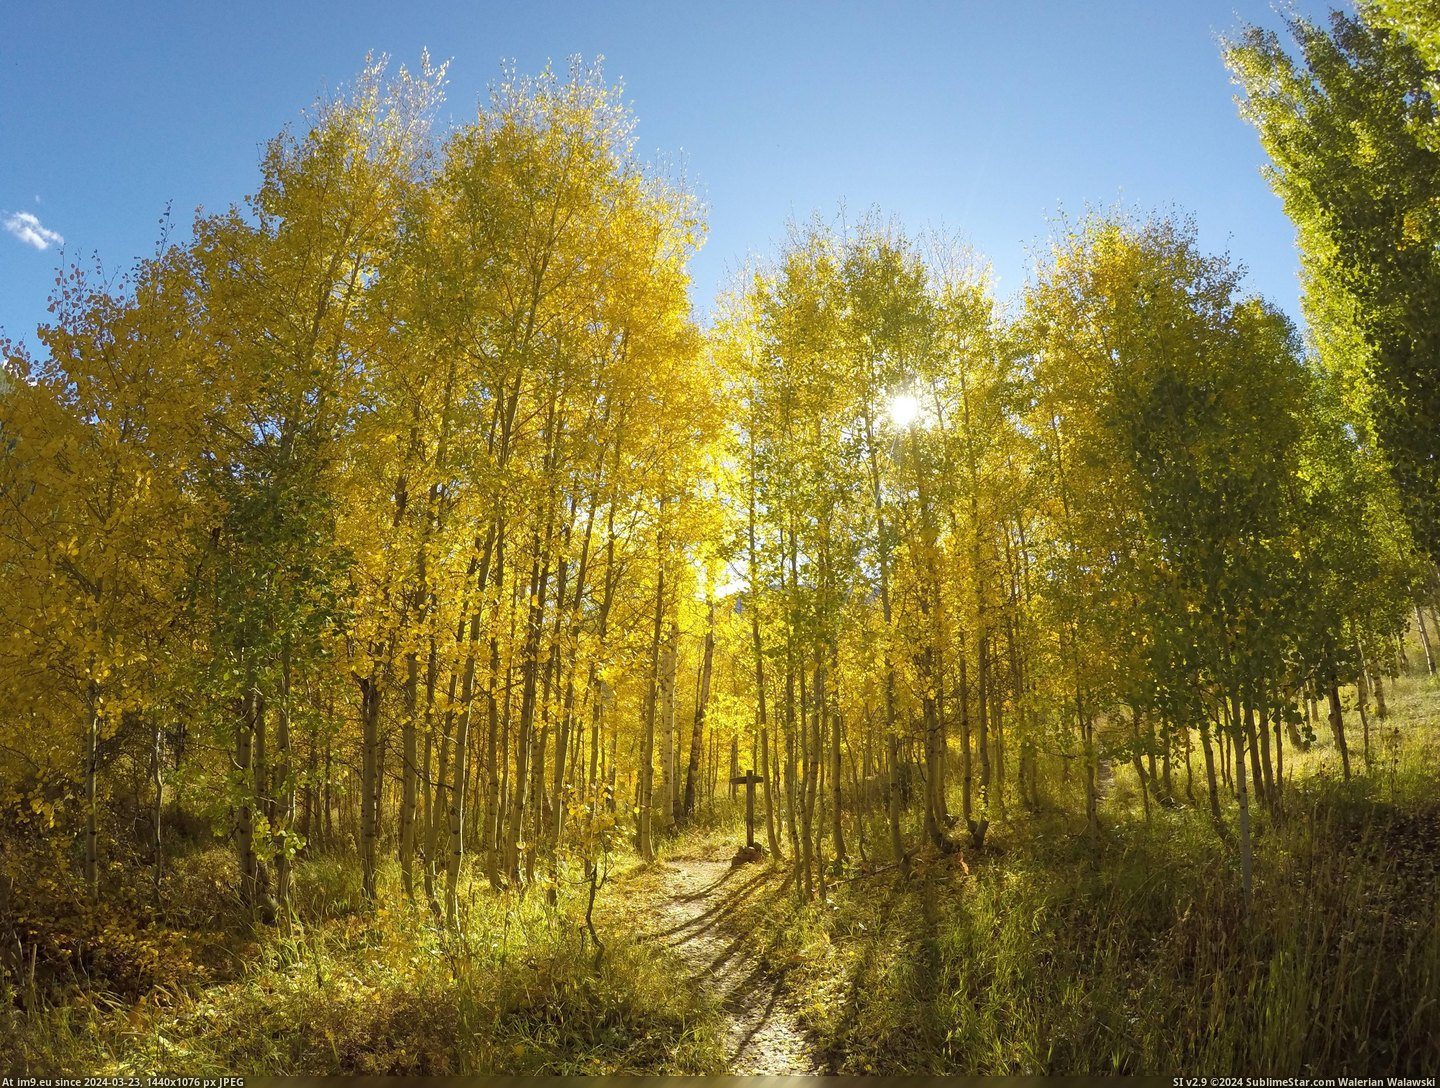 #Colorado #Fall #Gore #Begun #Creek #4000x3000 [Earthporn] Fall has begun at Gore Creek, Colorado  [4000x3000] Pic. (Obraz z album My r/EARTHPORN favs))